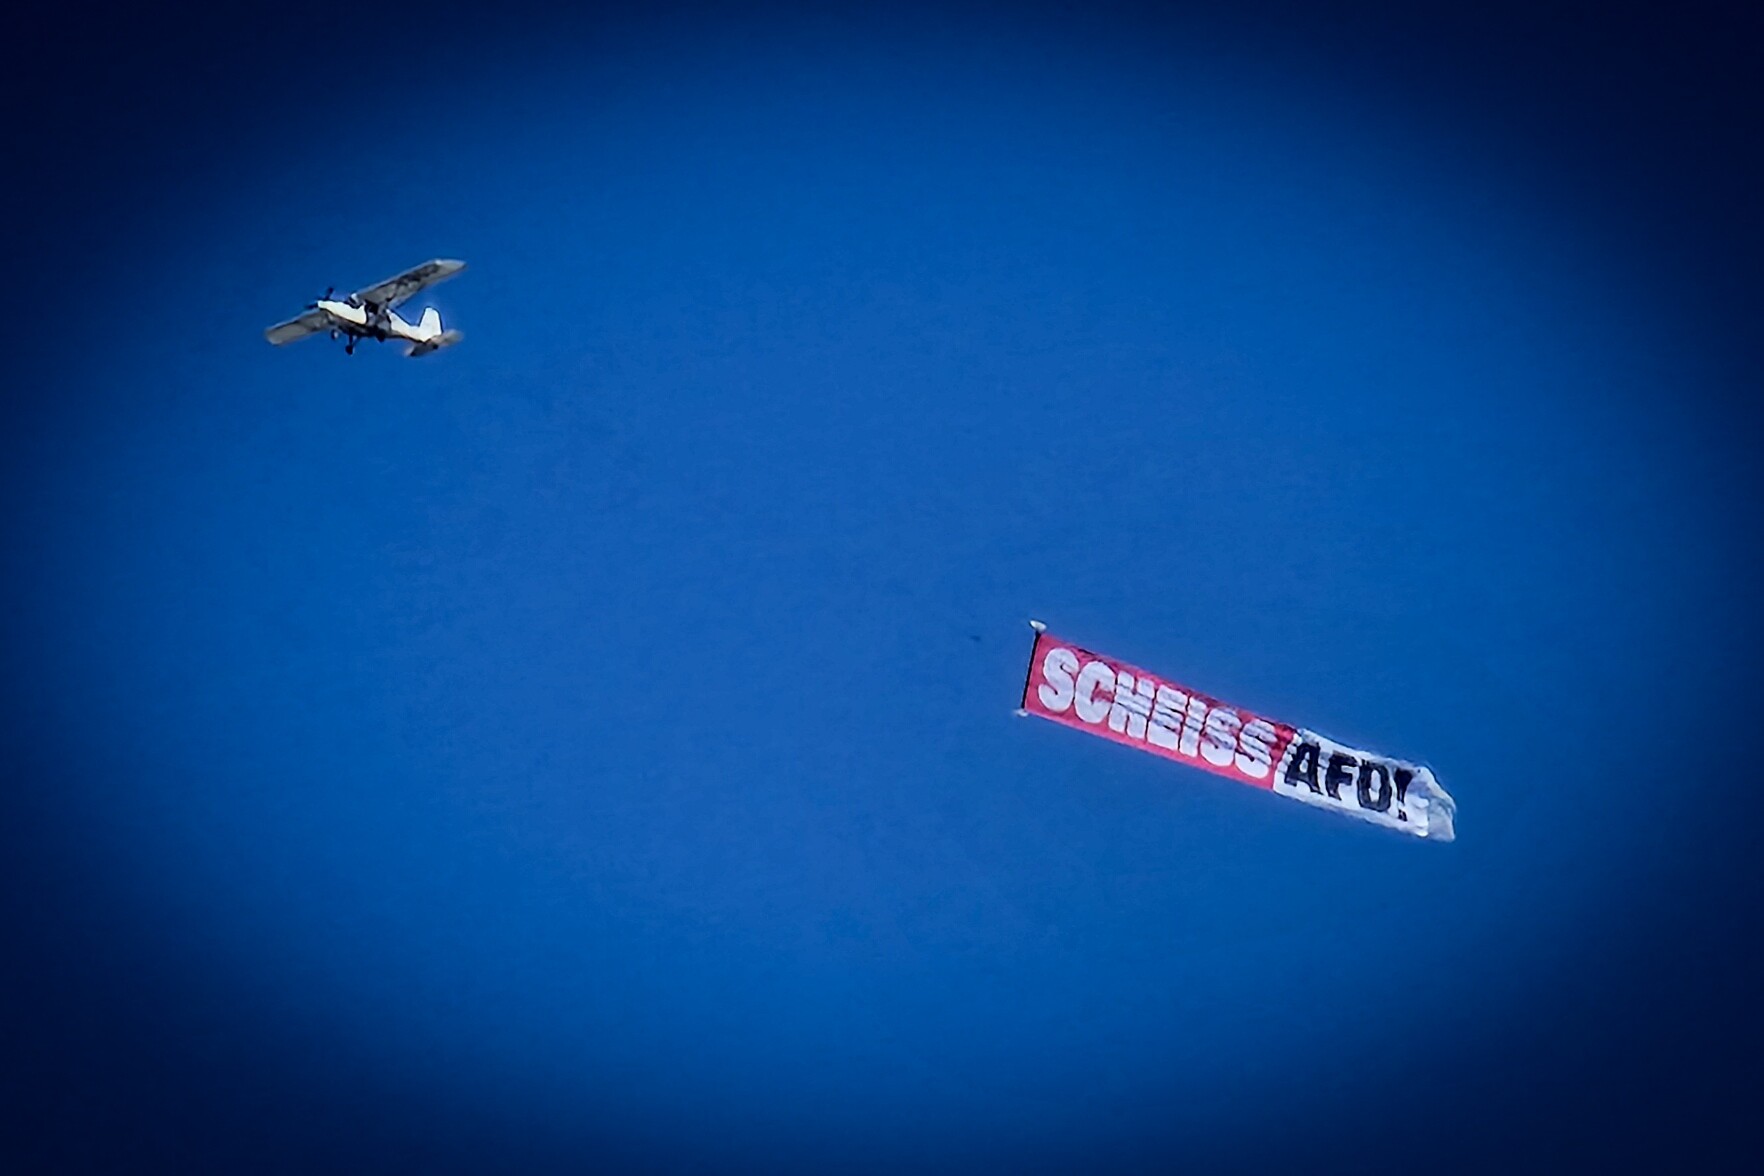 Ein Flugzeug am Himmel, das ein Spruchband mit der Aufschrift "Scheiss AfD" zieht.